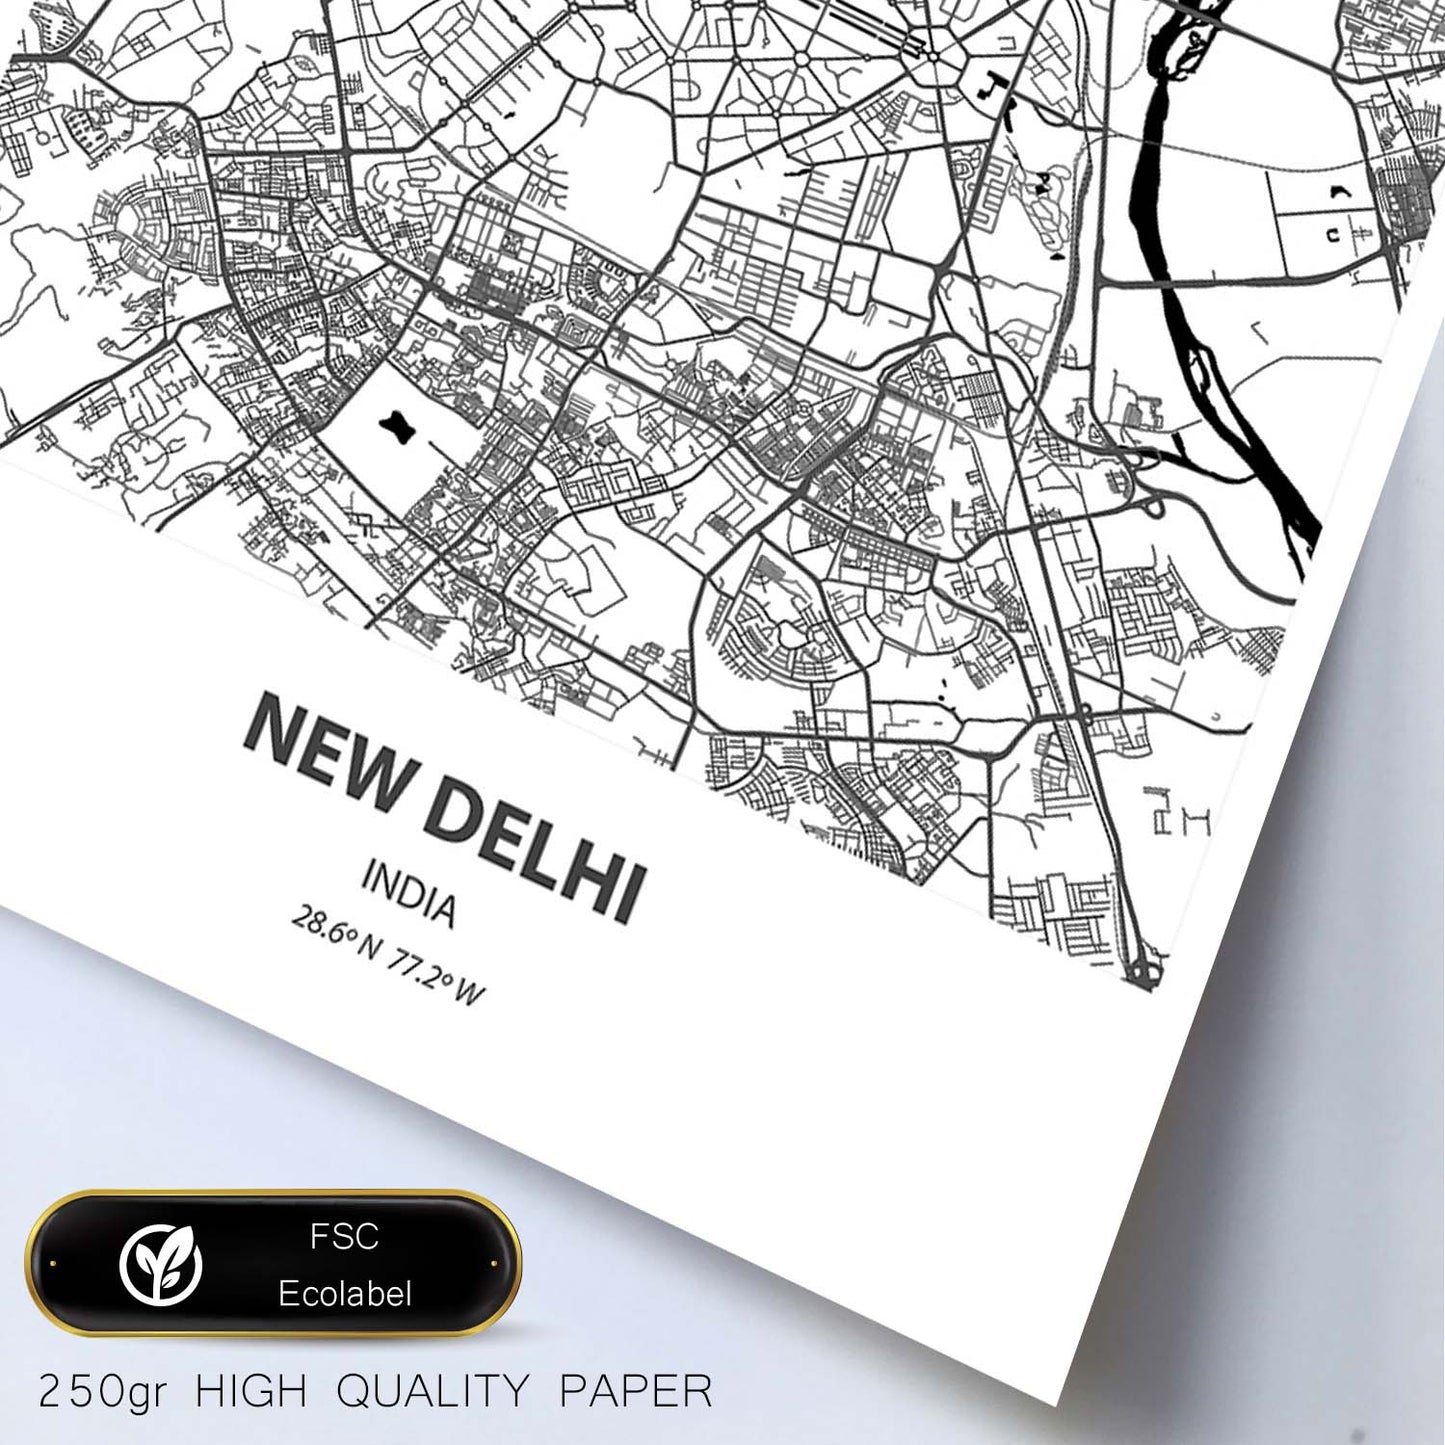 Poster con mapa de New Delhi - India. Láminas de ciudades de Asia con mares y ríos en color negro.-Artwork-Nacnic-Nacnic Estudio SL